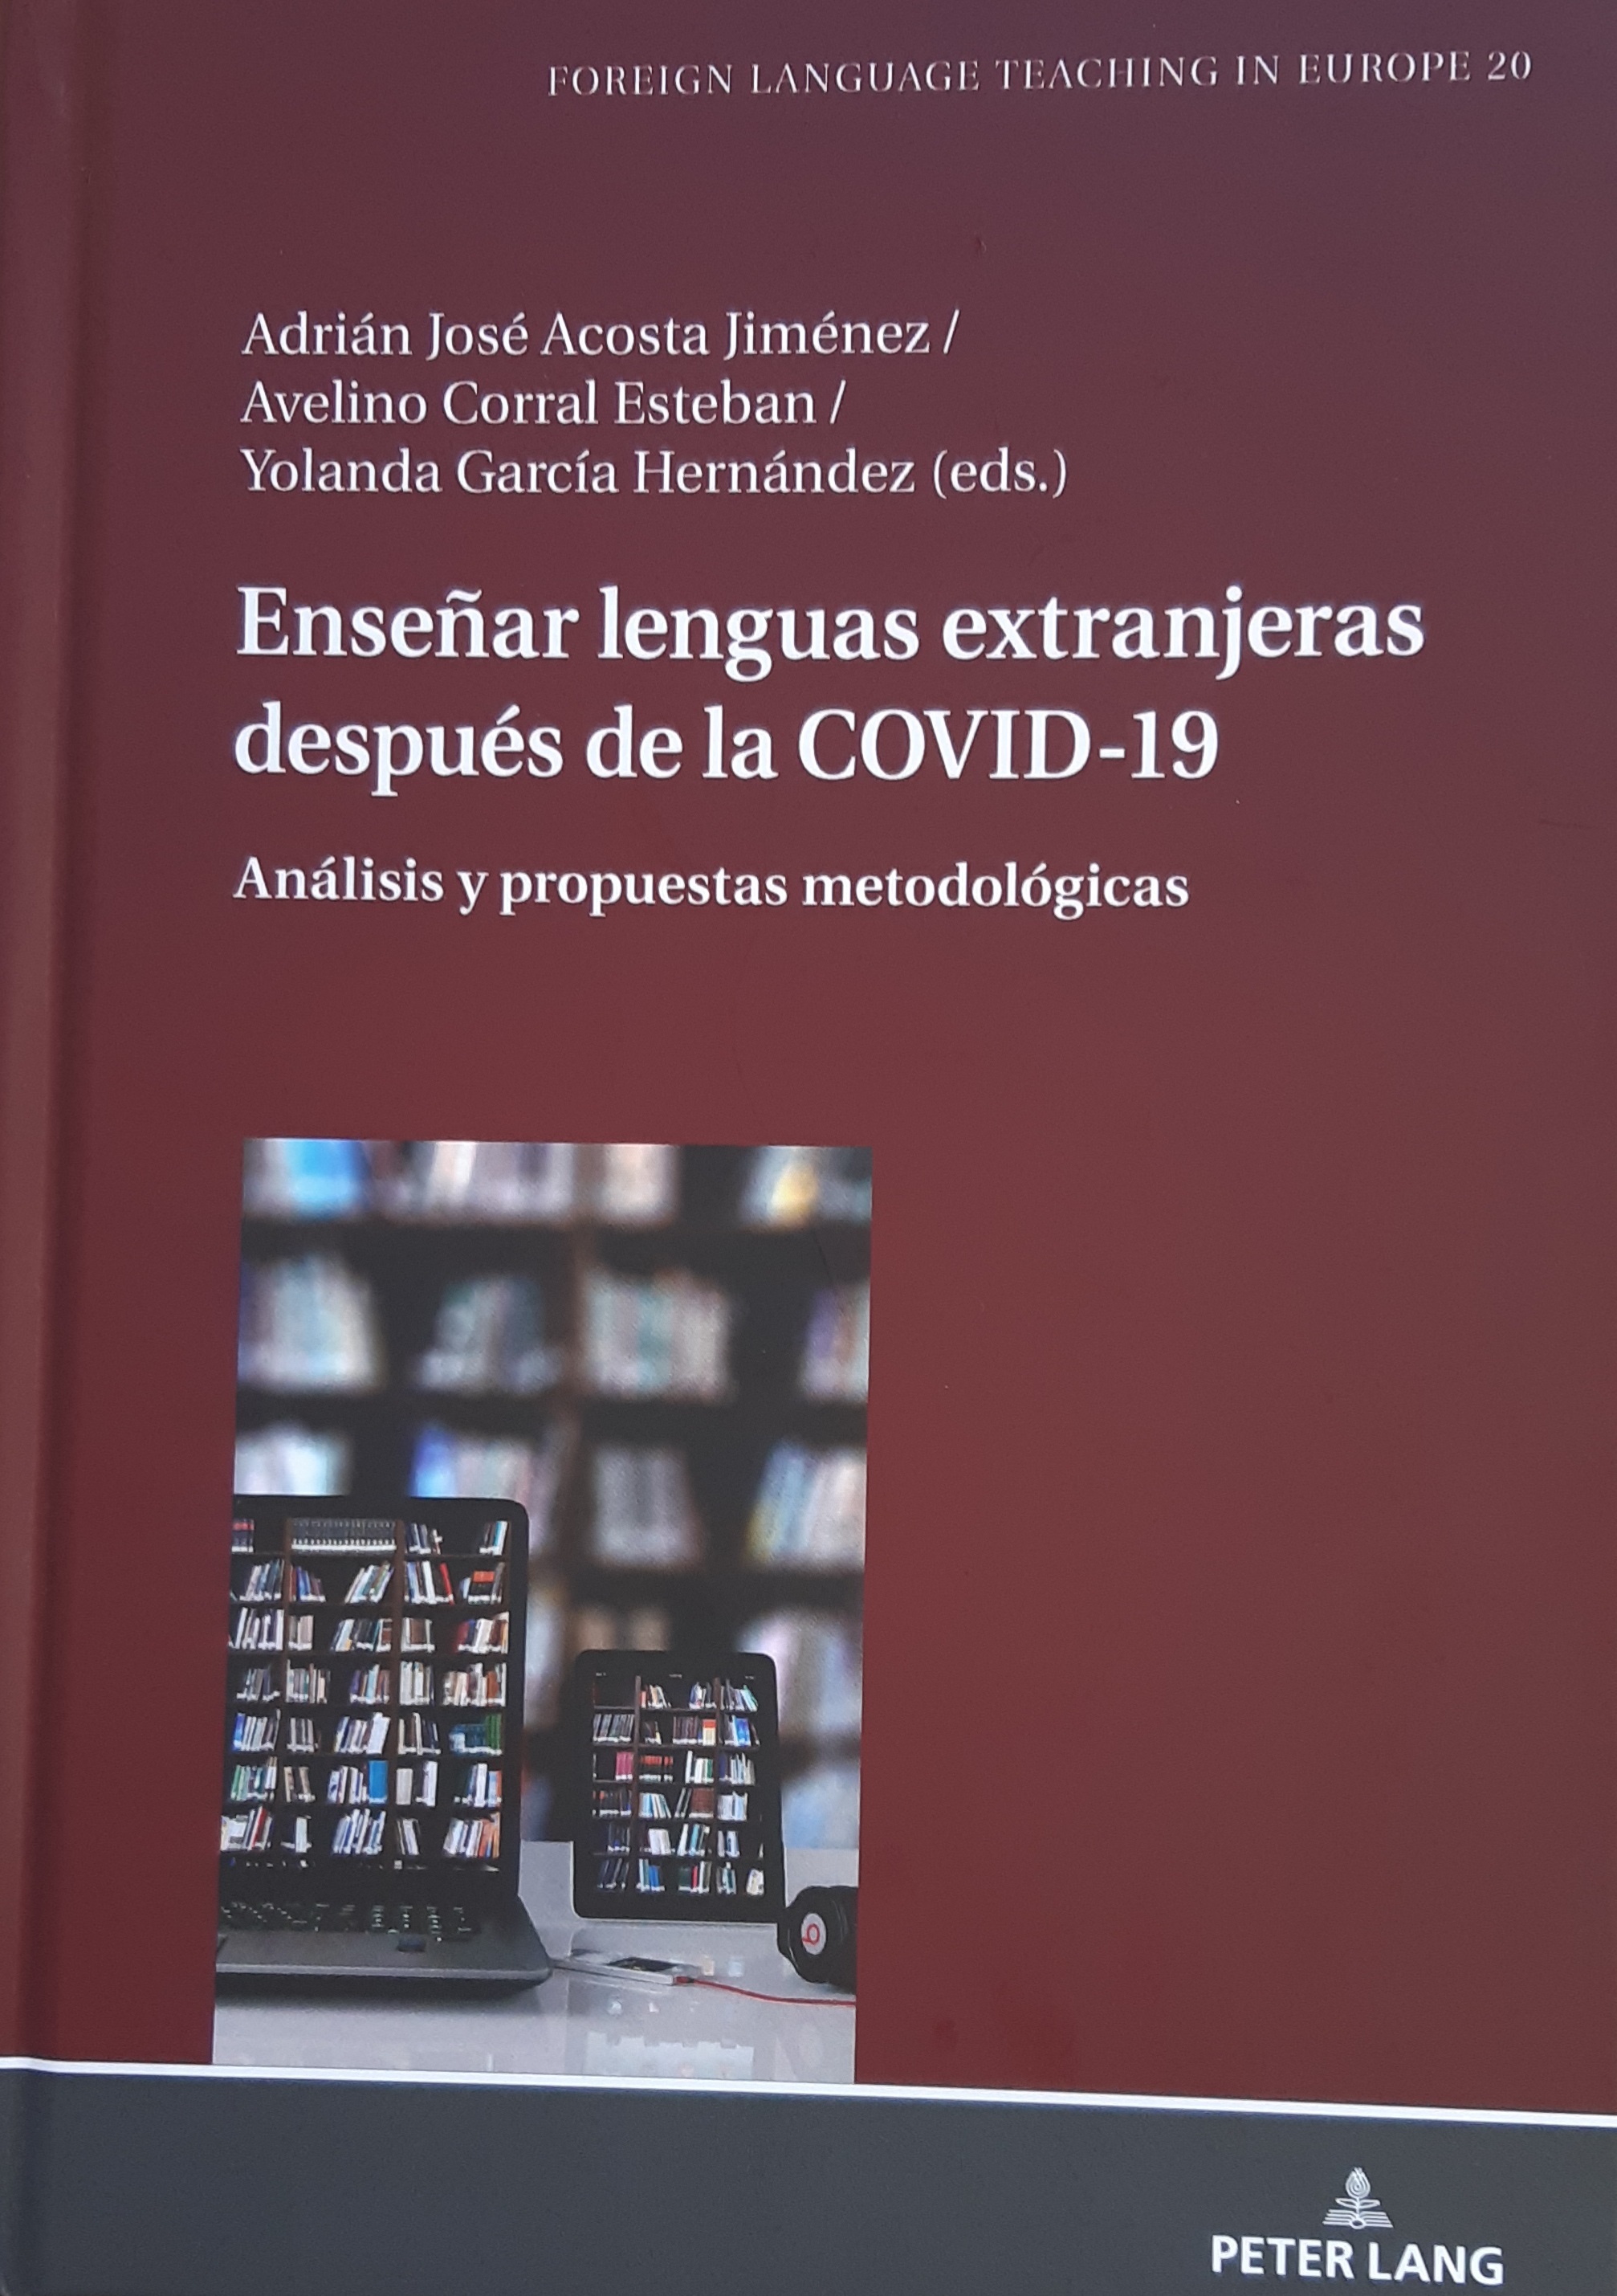 Imagen de portada del libro Enseñar lenguas extranjeras después de la COVID-19